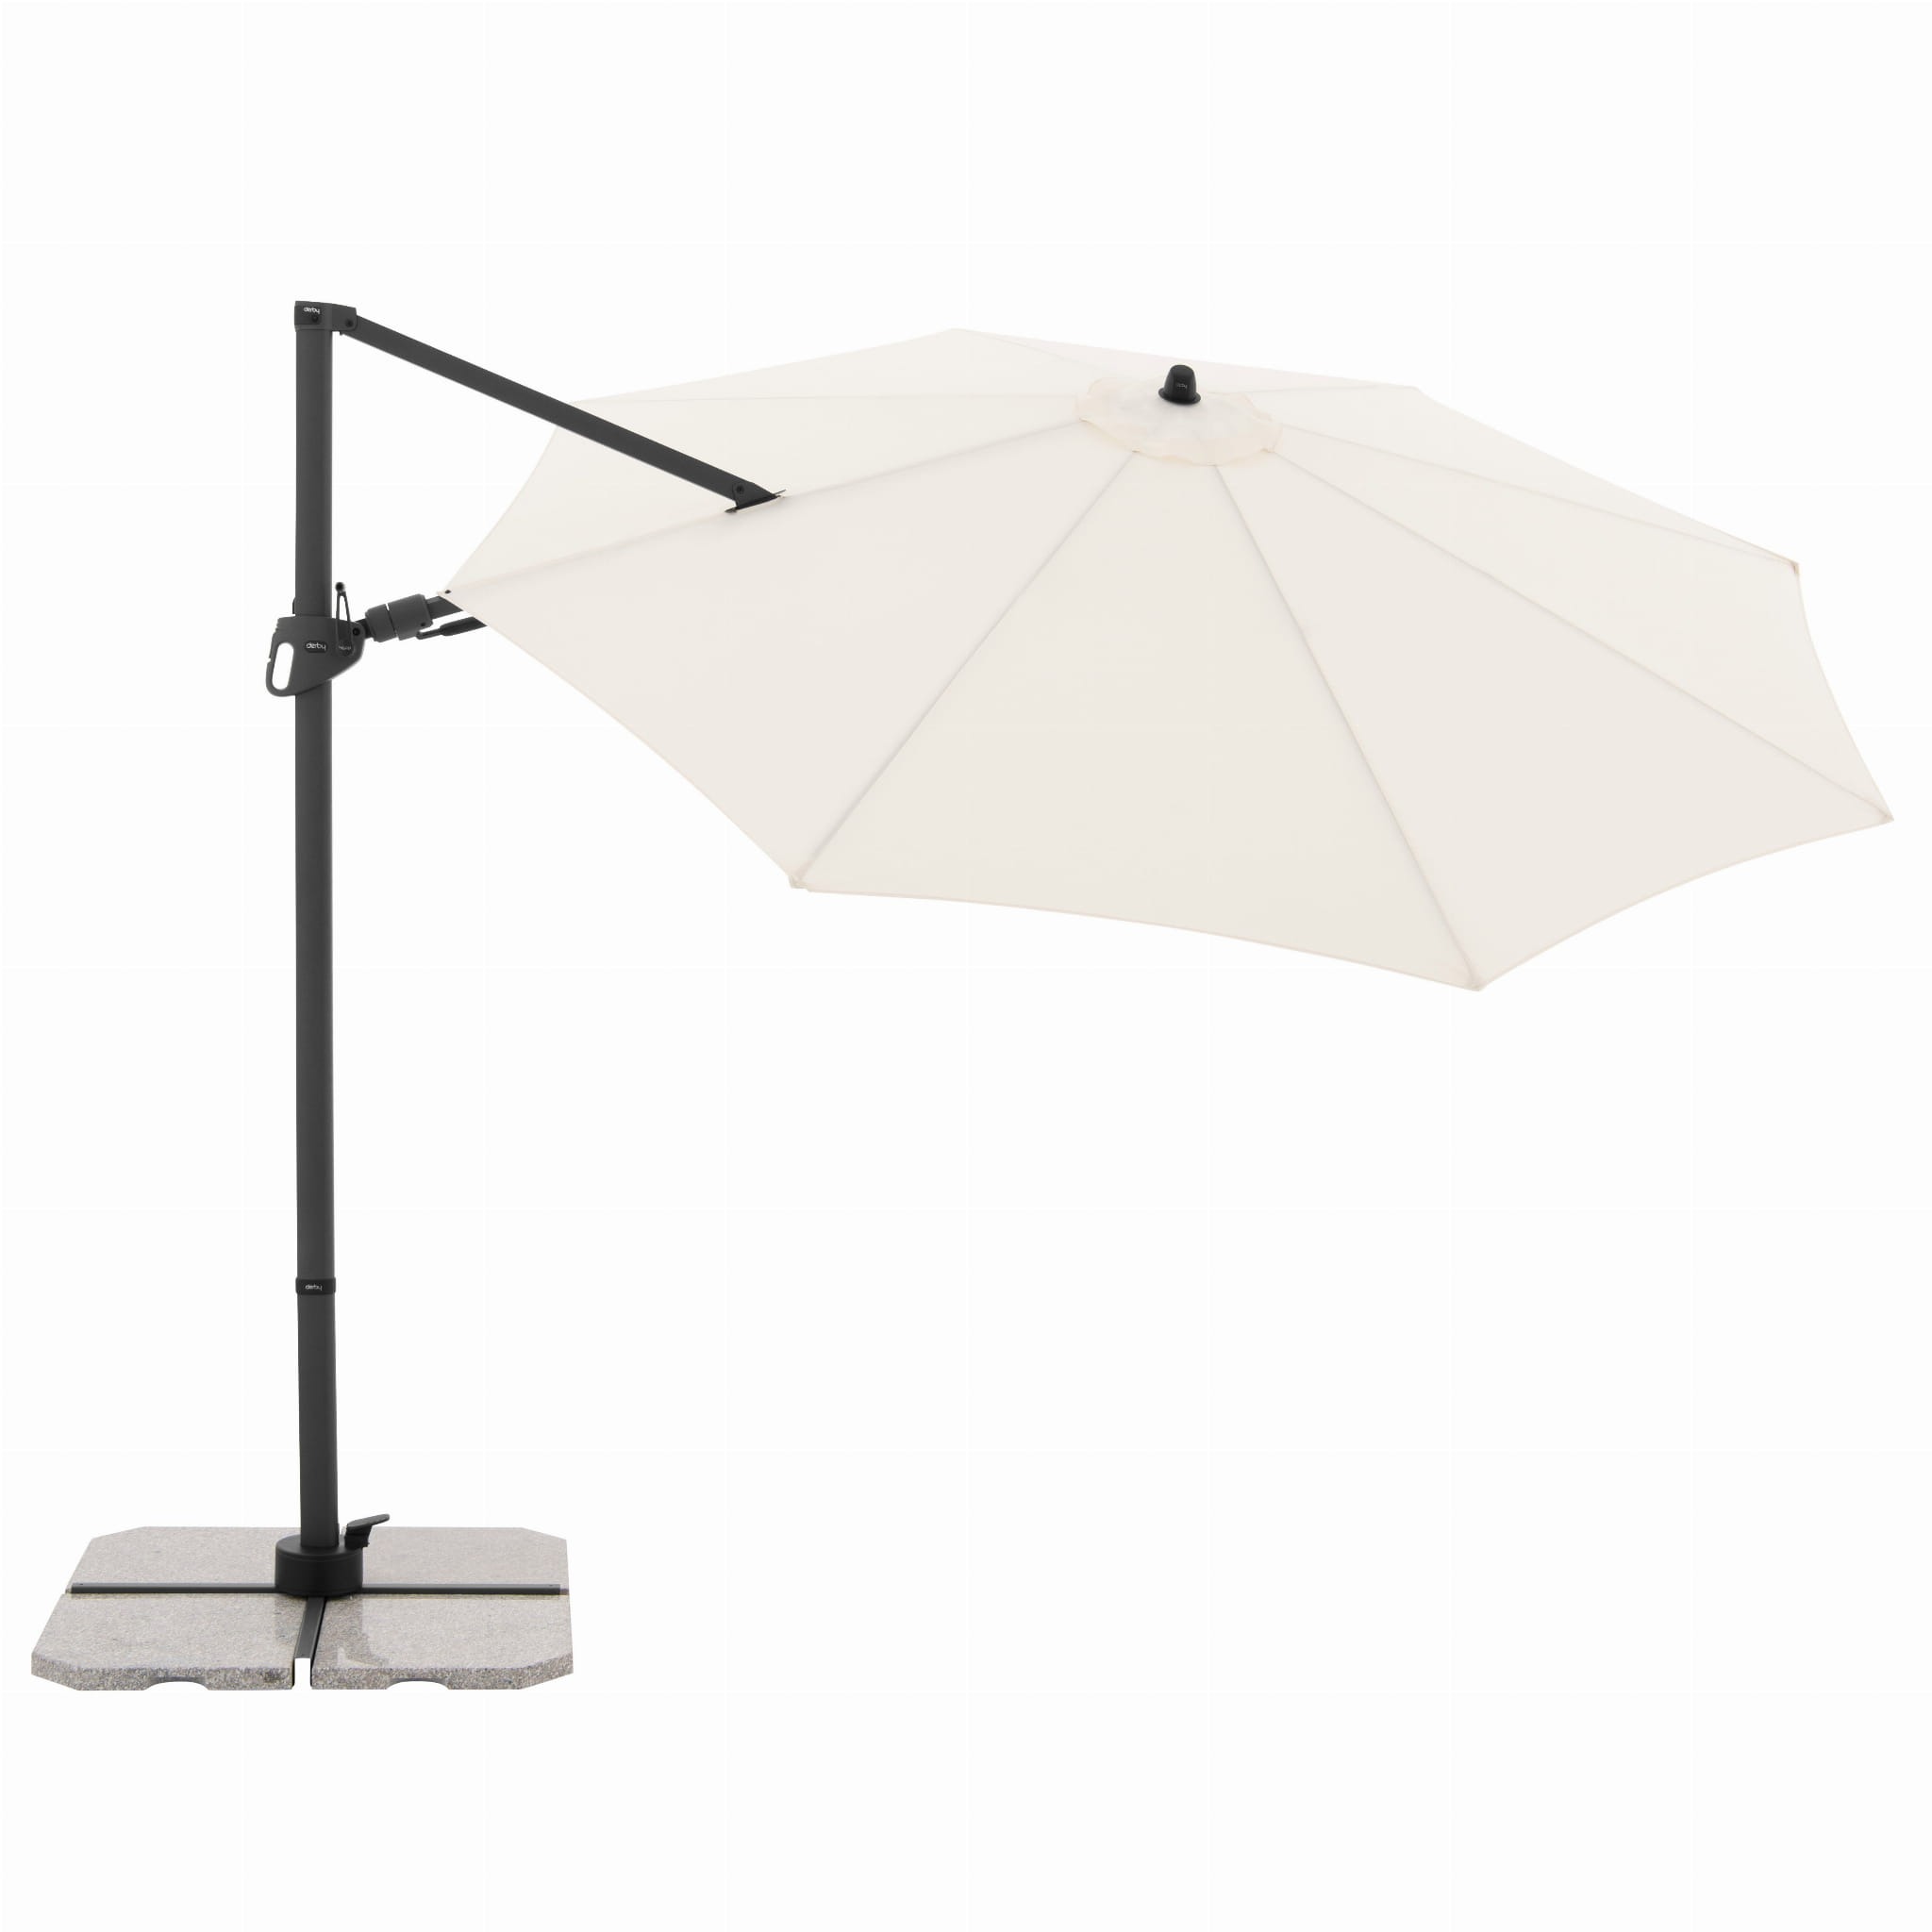 Зонт садовый Doppler Derby DX бежевый 335 см без подставки зонт садовый doppler ravenna smart серый 300 см без базы